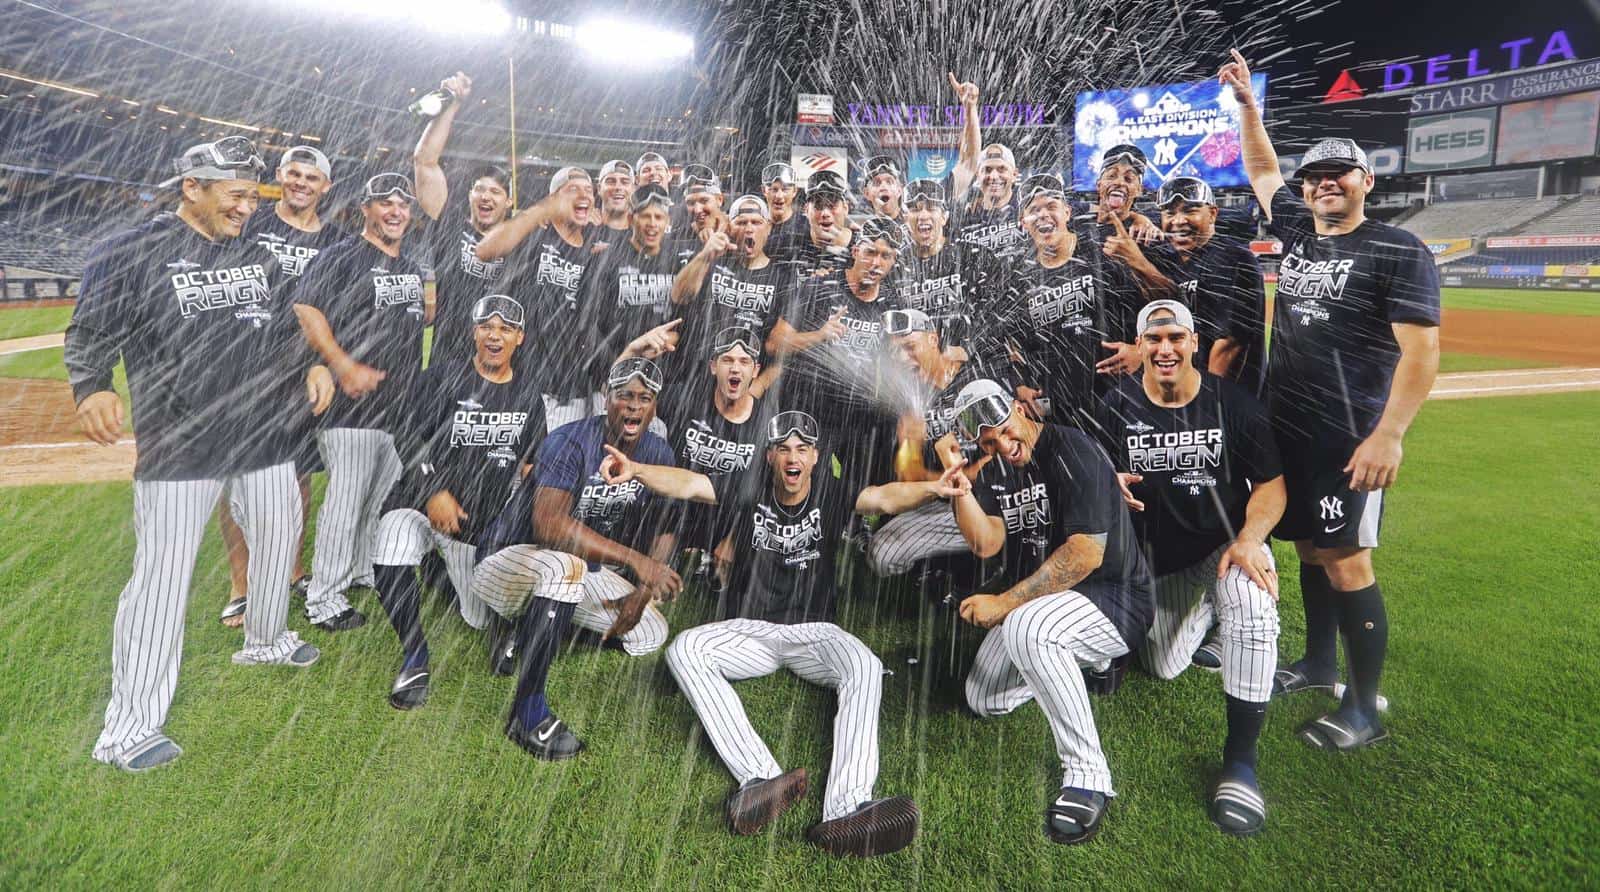 Yankees logran el primer Título Este de la Liga Americana desde 2012